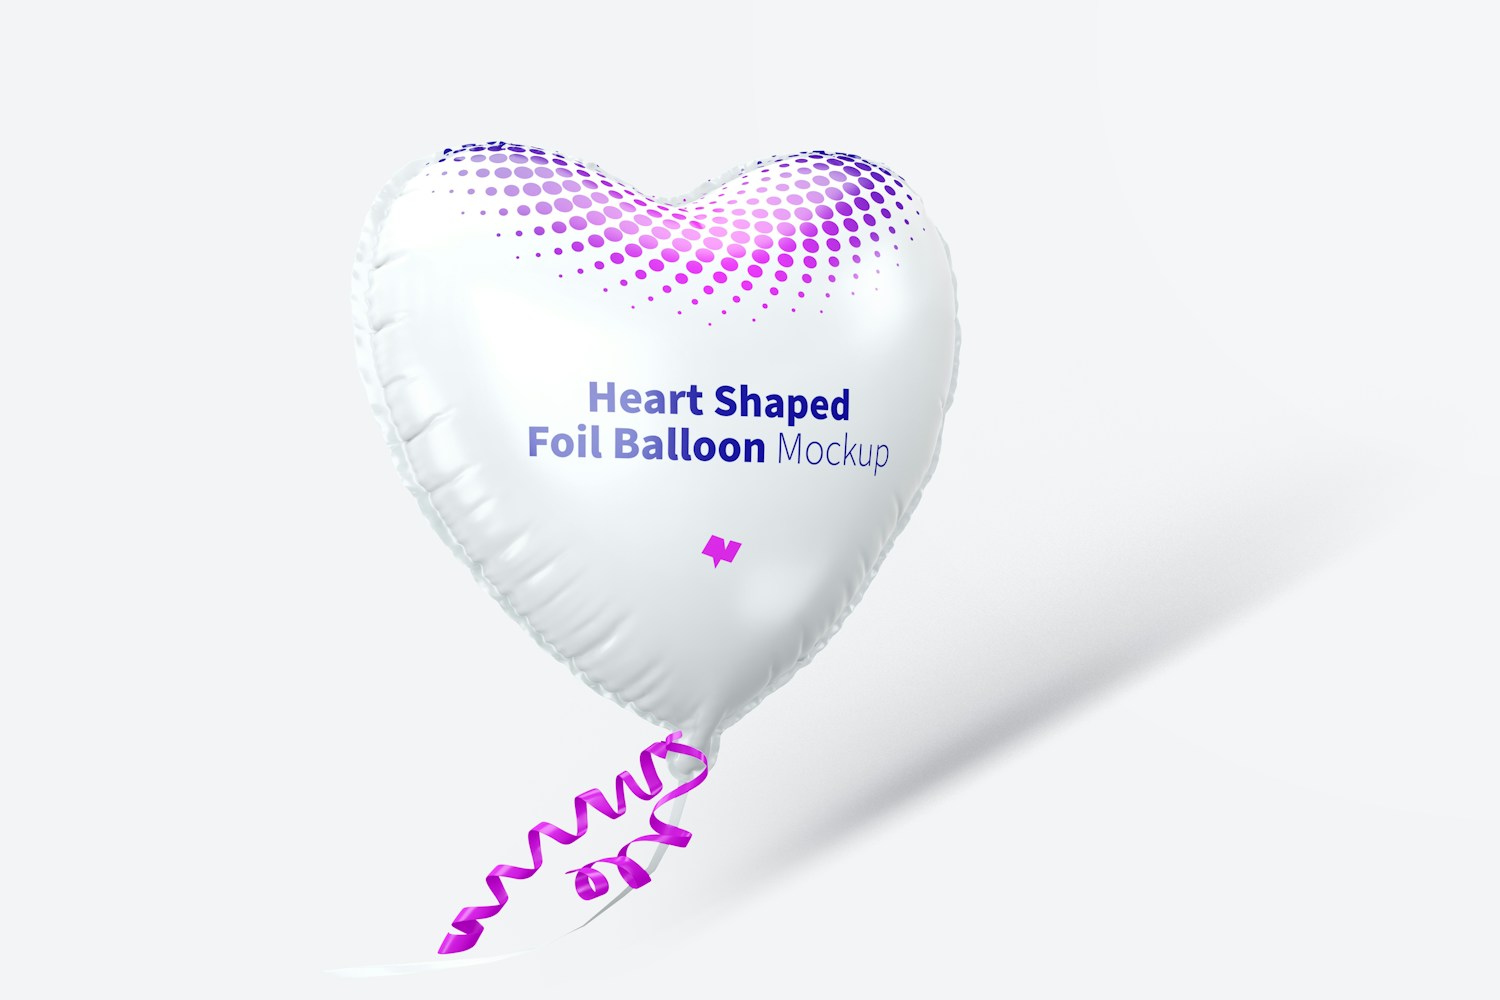 Heart Shaped Foil Balloon Mockup